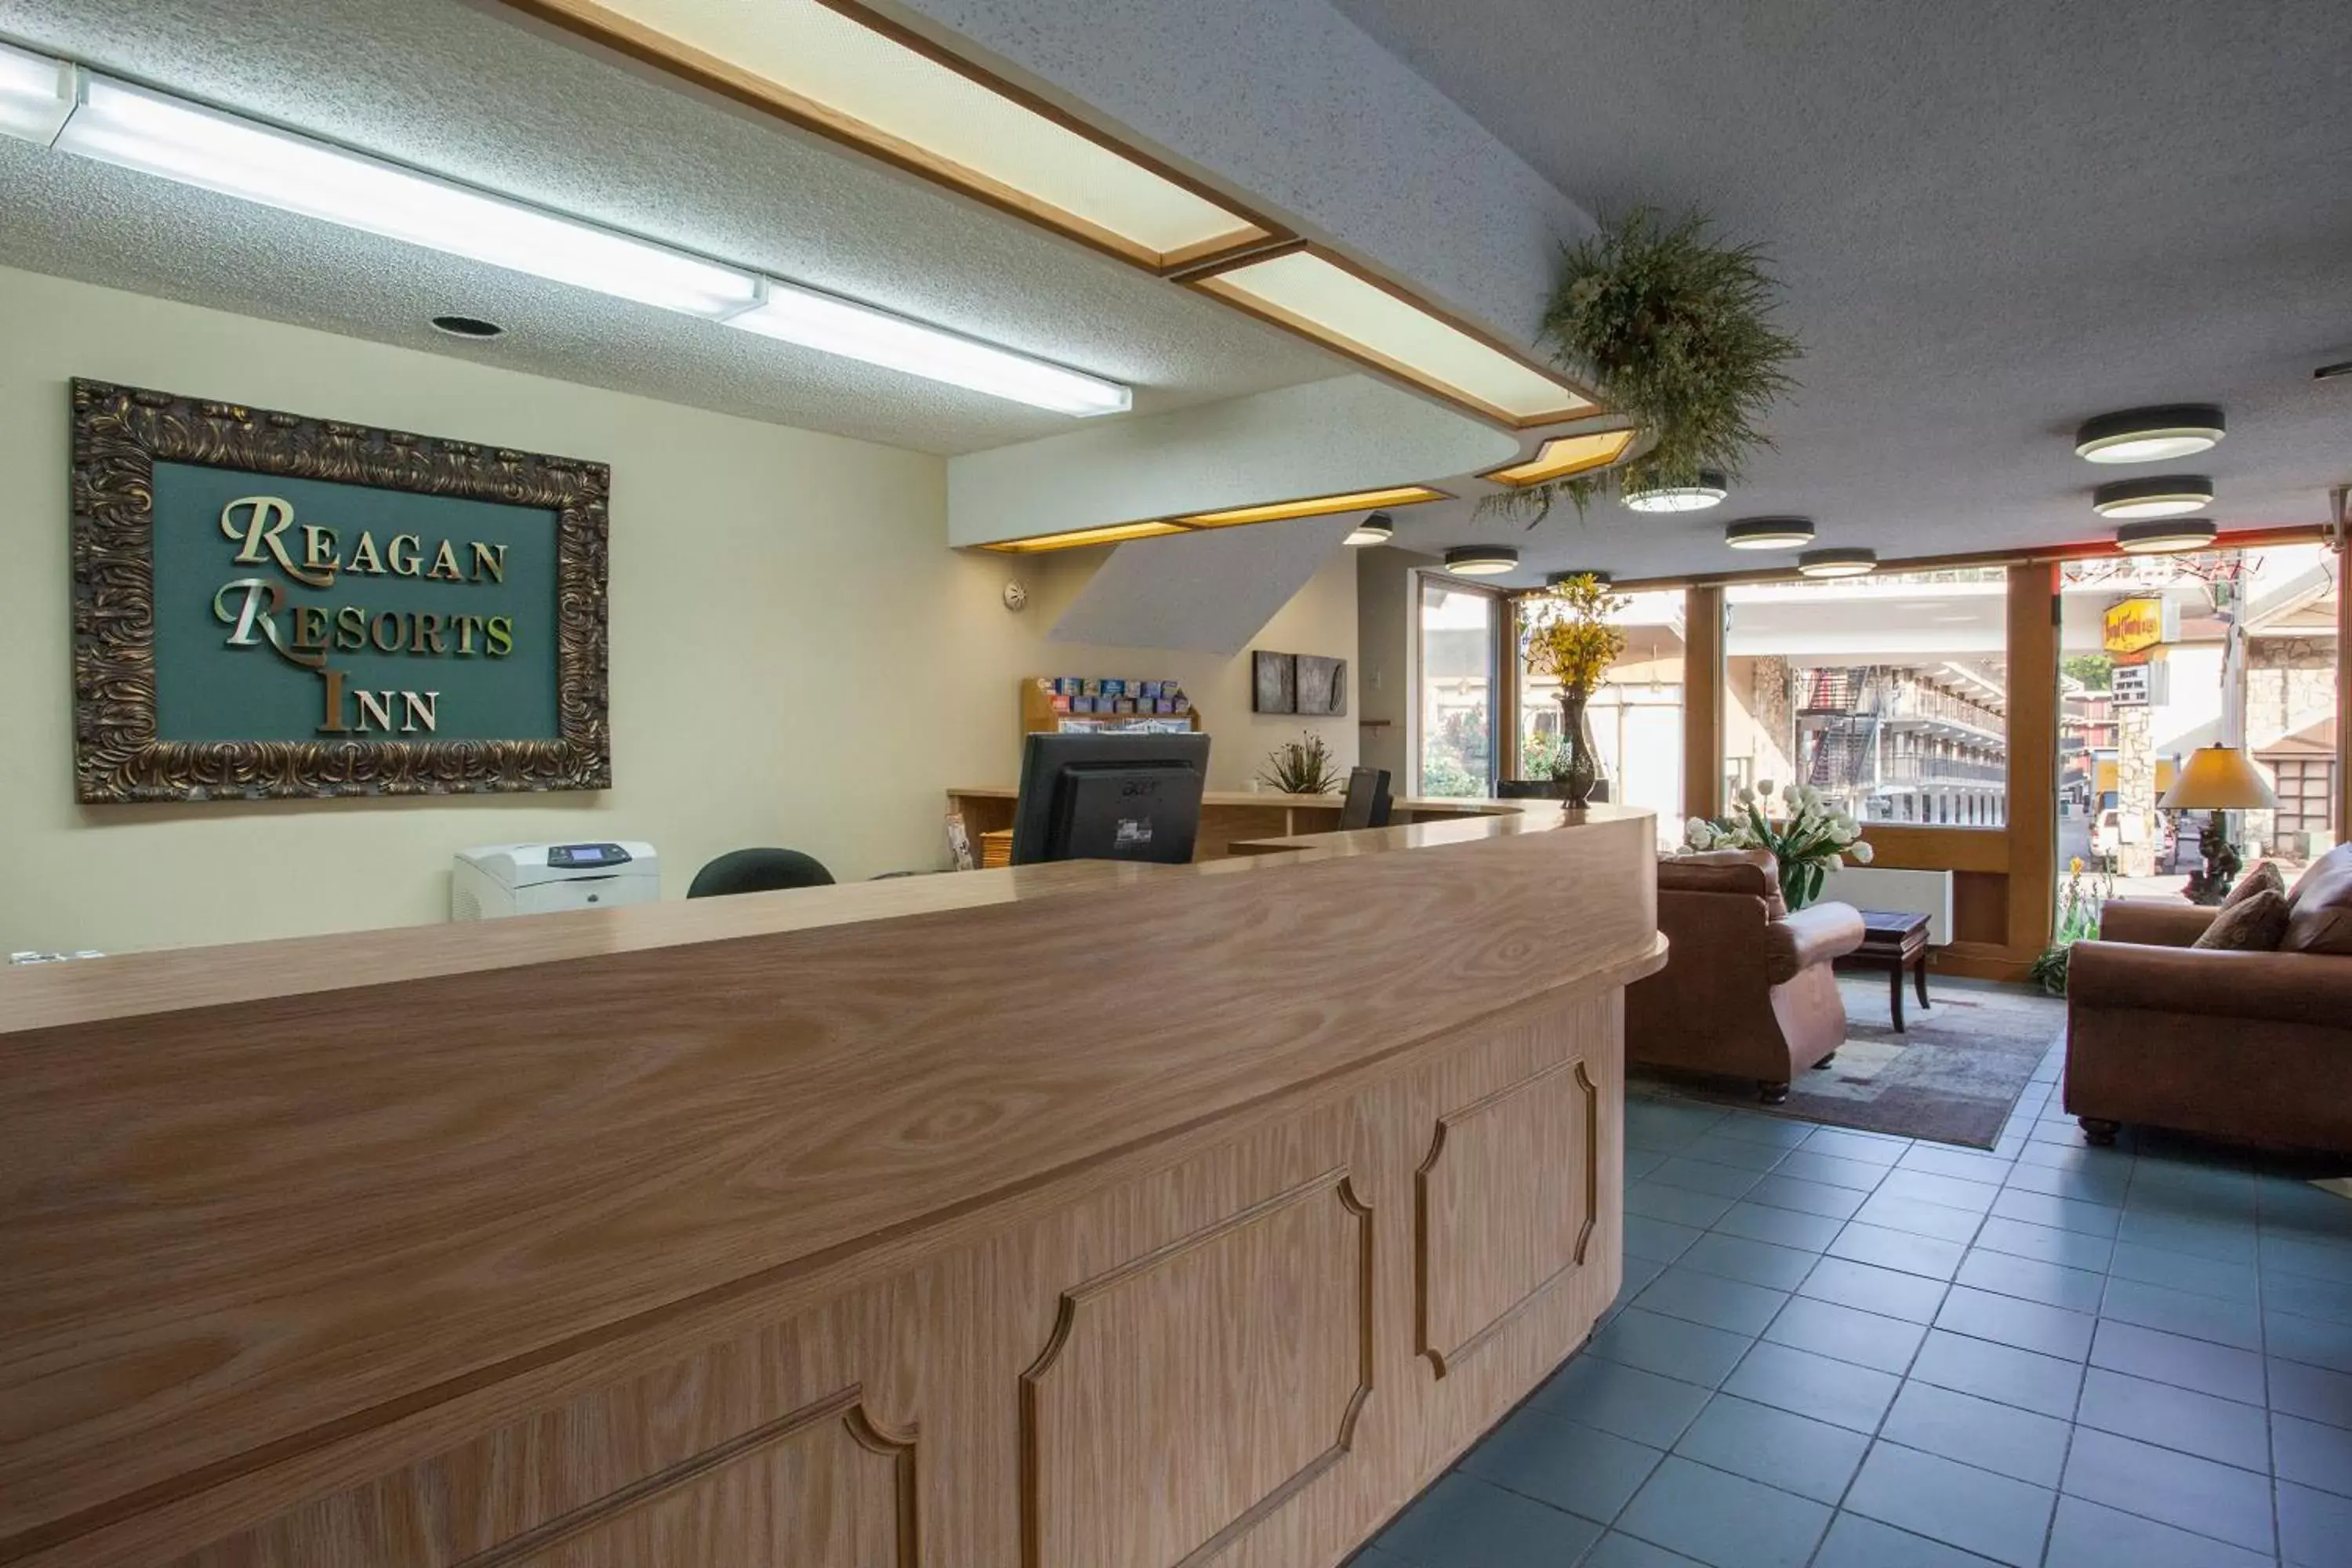 Lobby or reception, Lobby/Reception in Reagan Resorts Inn